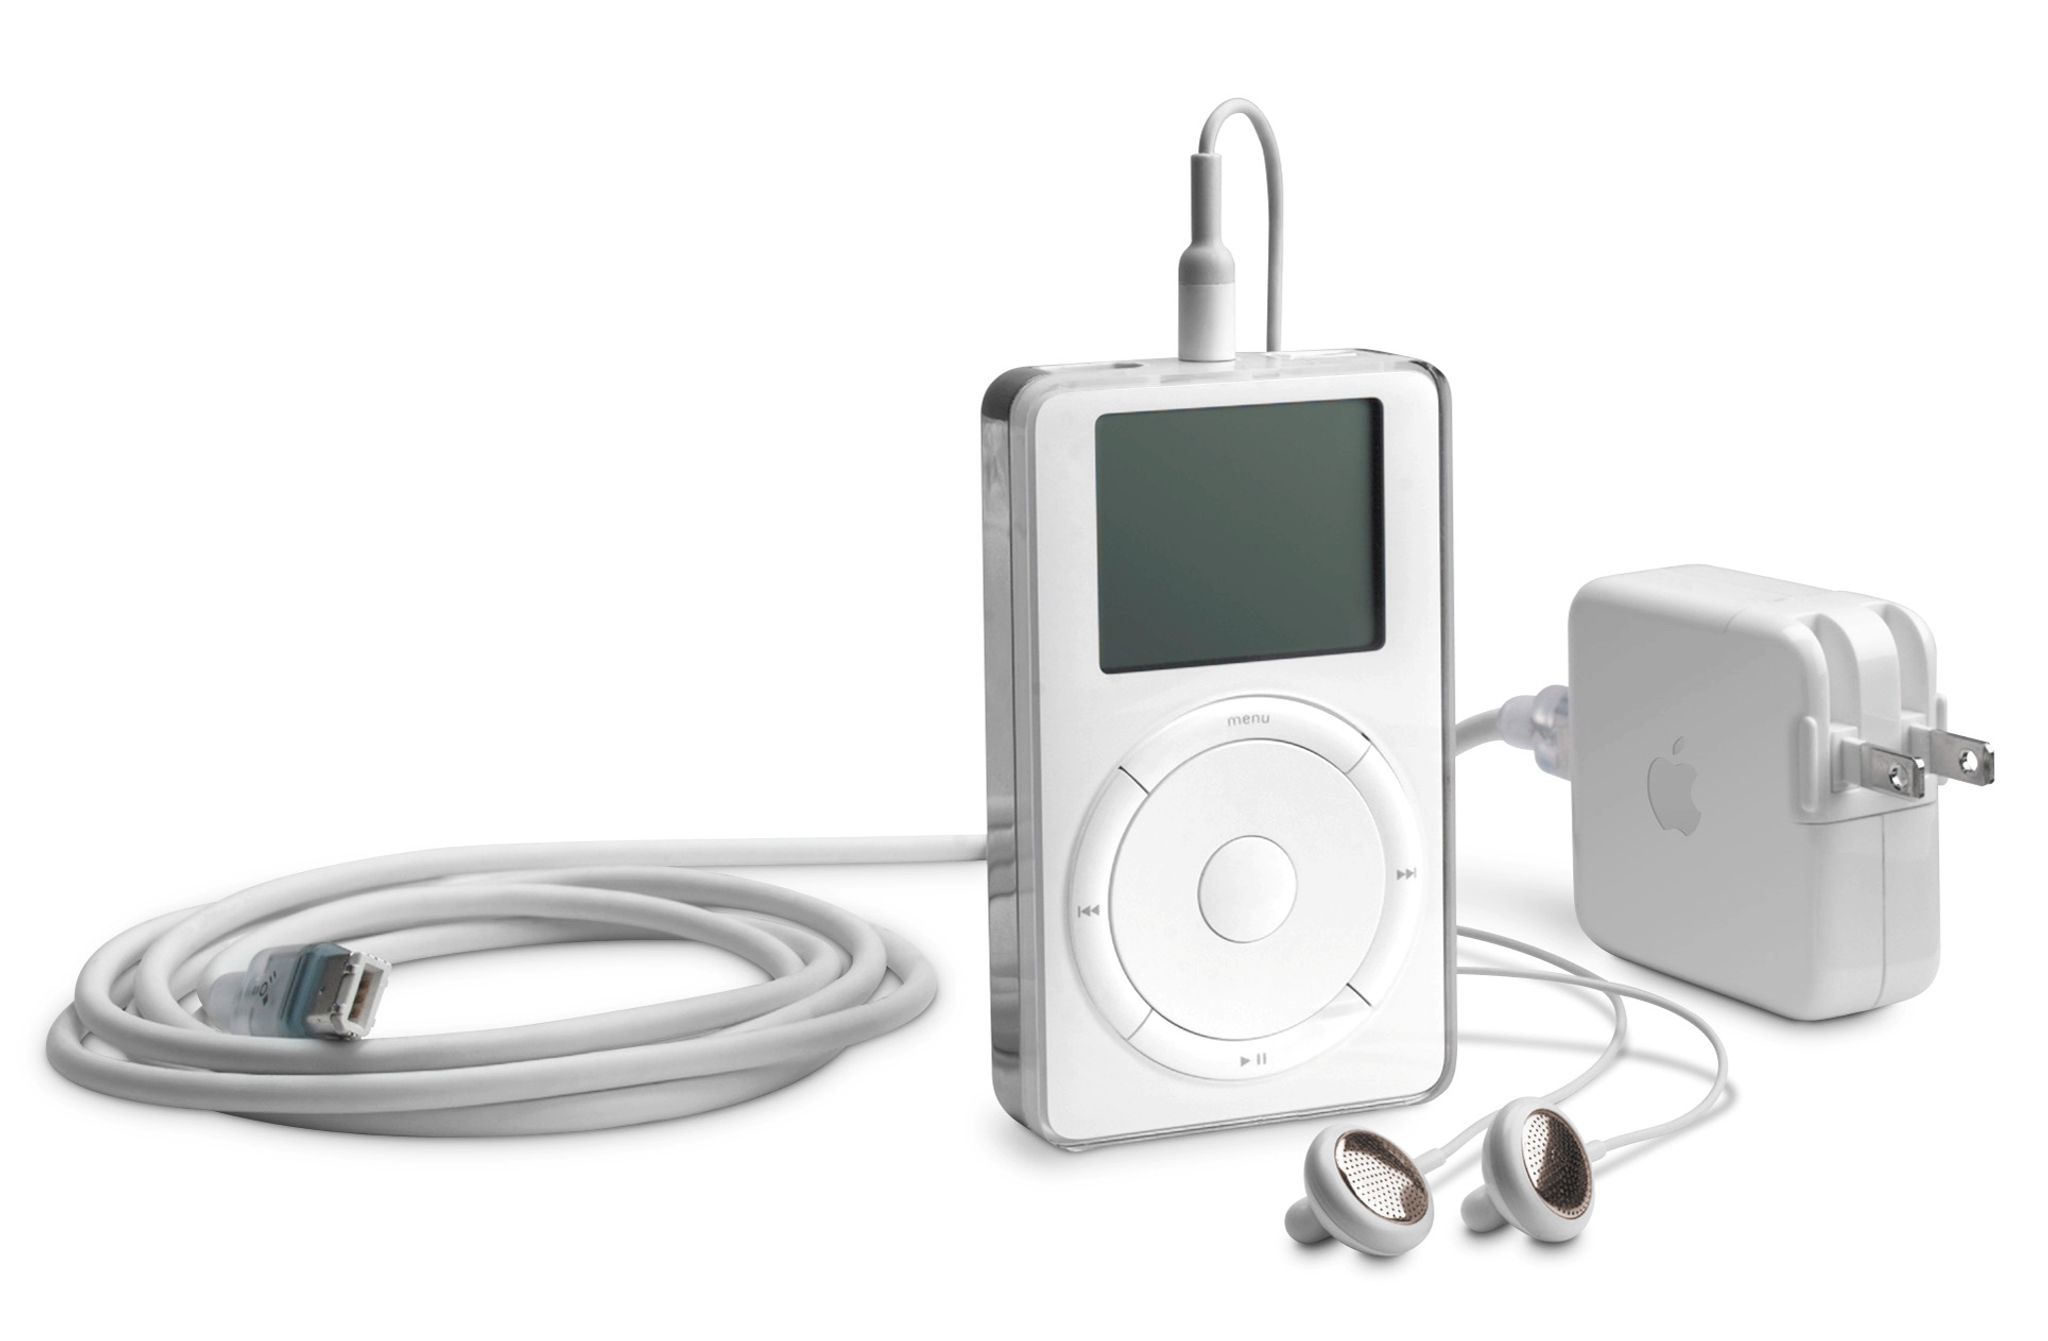 Der erste iPod, den der damalige Apple-Chef Steve Jobs am 23. Oktober 2001 vorgestellt hat, enthielt eine 5-Gigabyte-Festplatte und konnte dank MP3-Komprimierung rund 1000 Musikstücke speichern.&nbsp;Foto: dpa/Apple Inc.